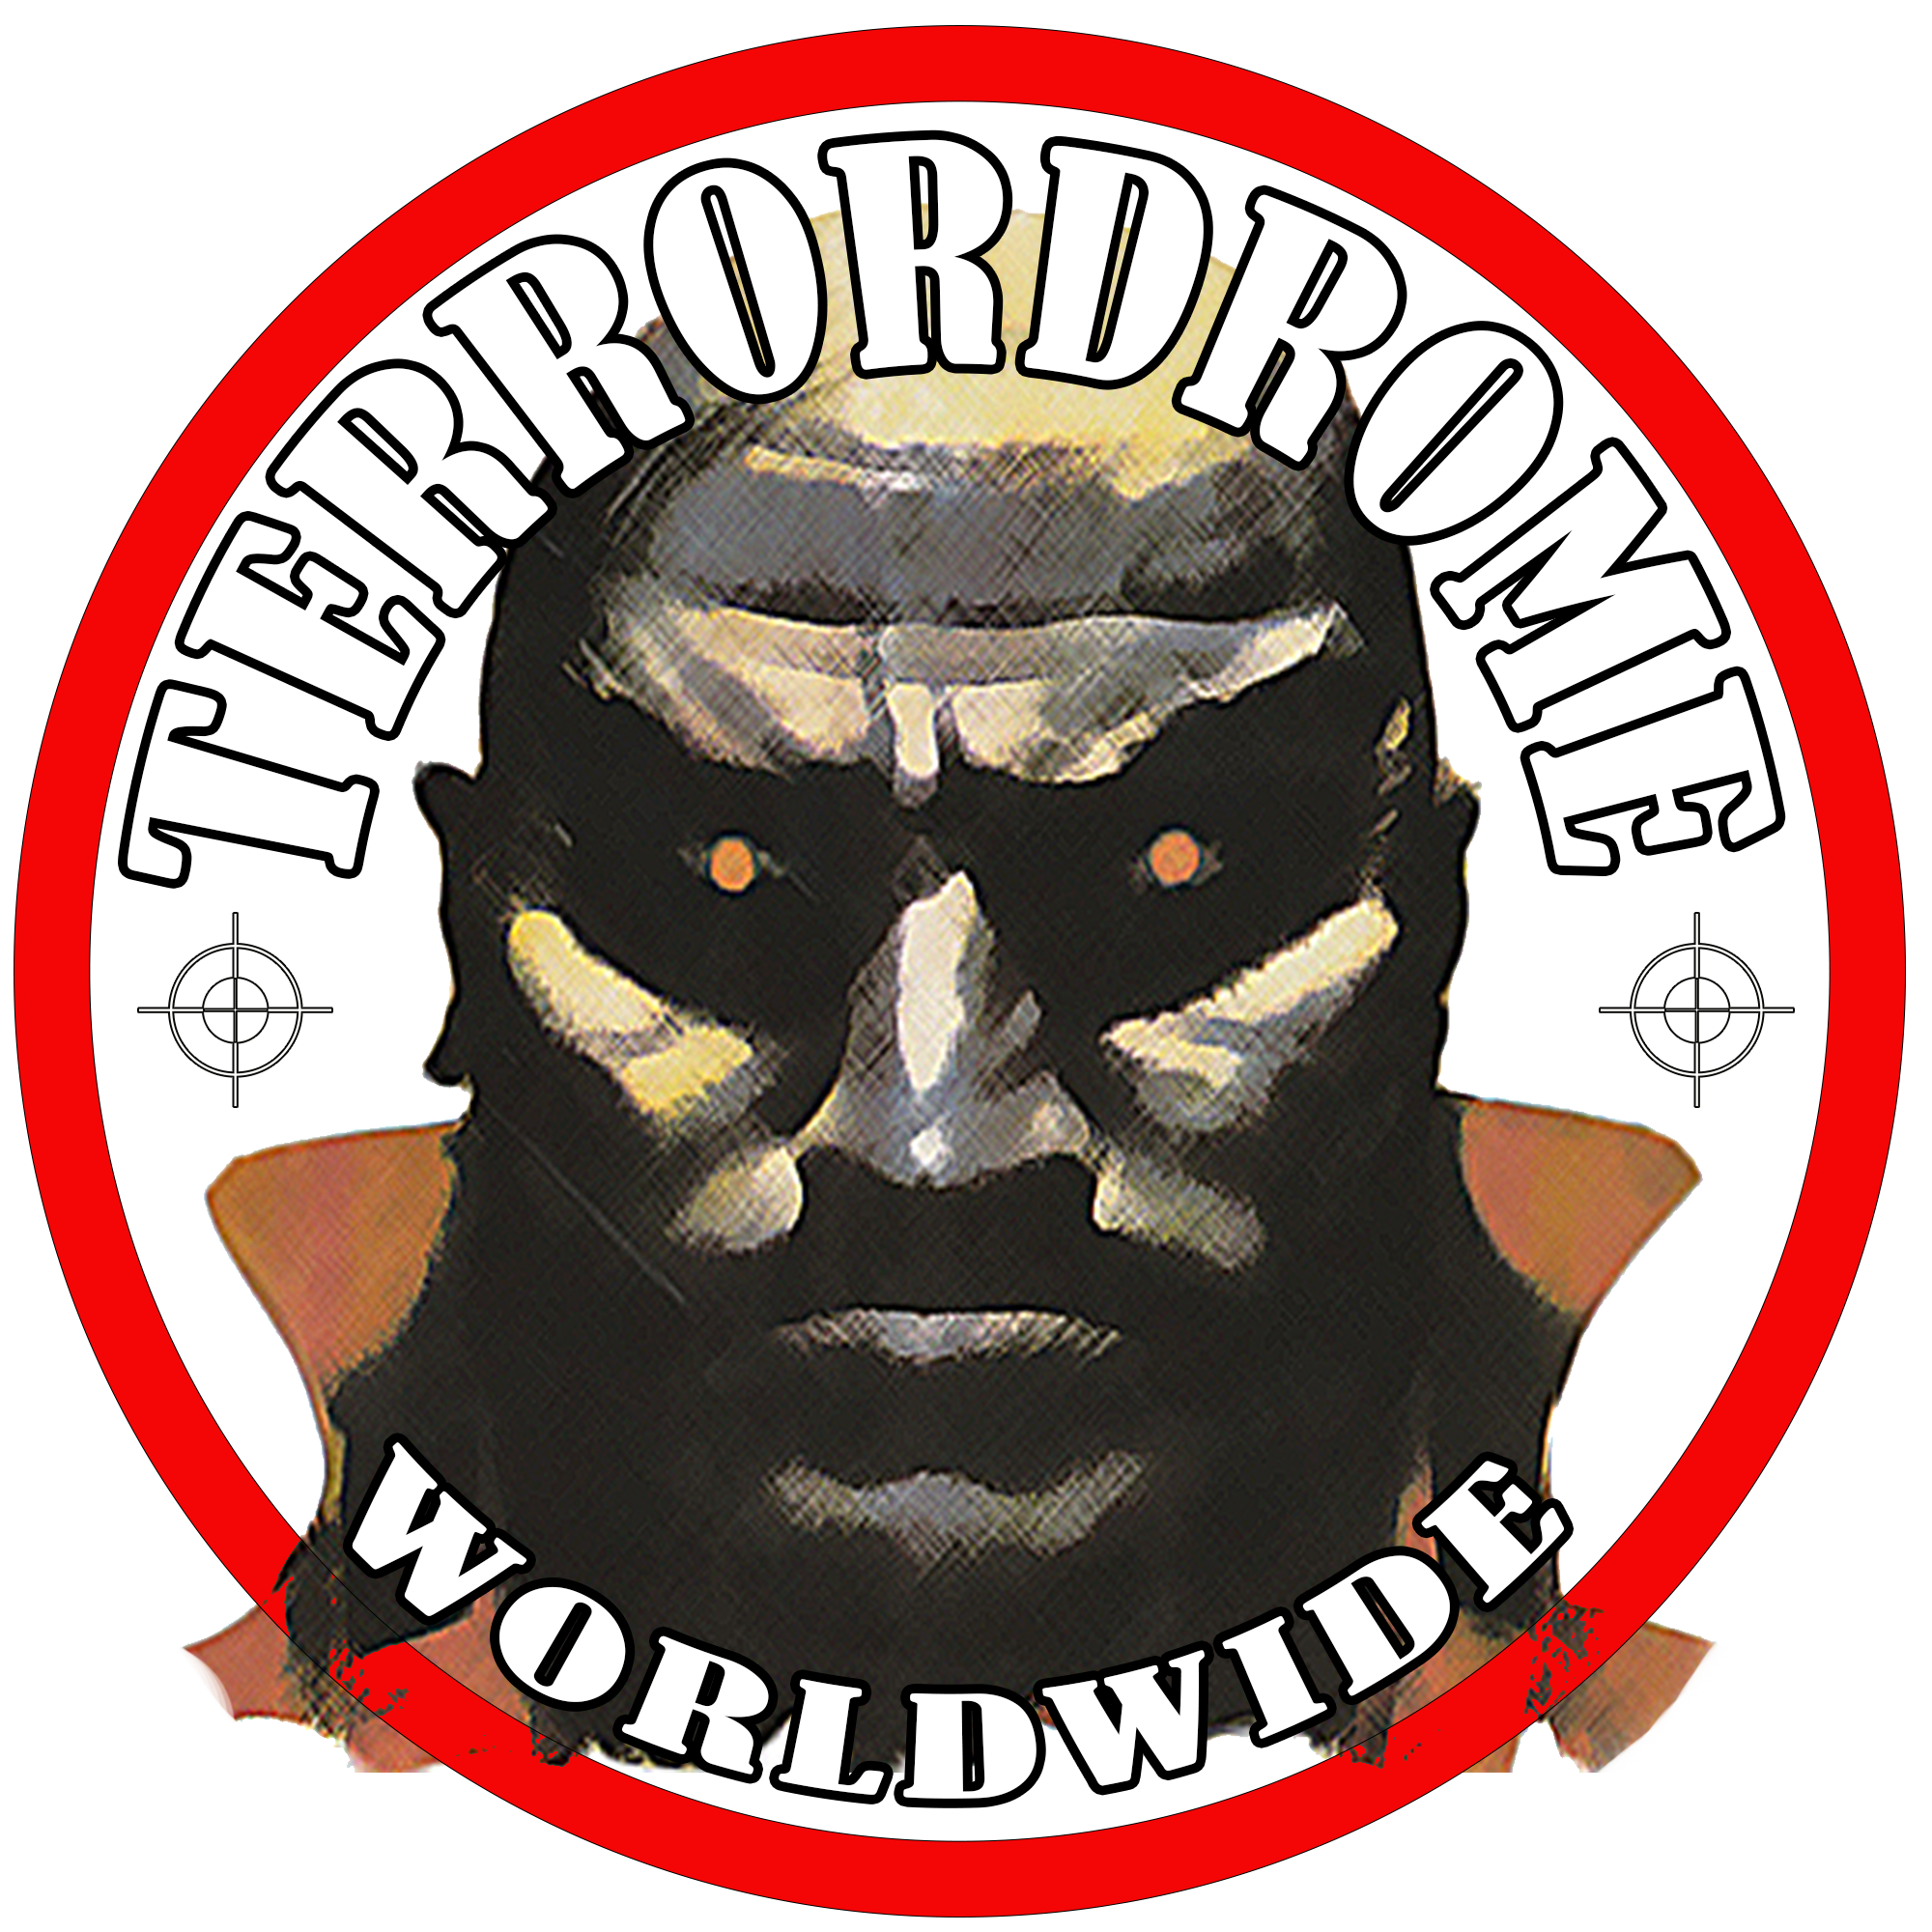 Terrordrome Worldwide